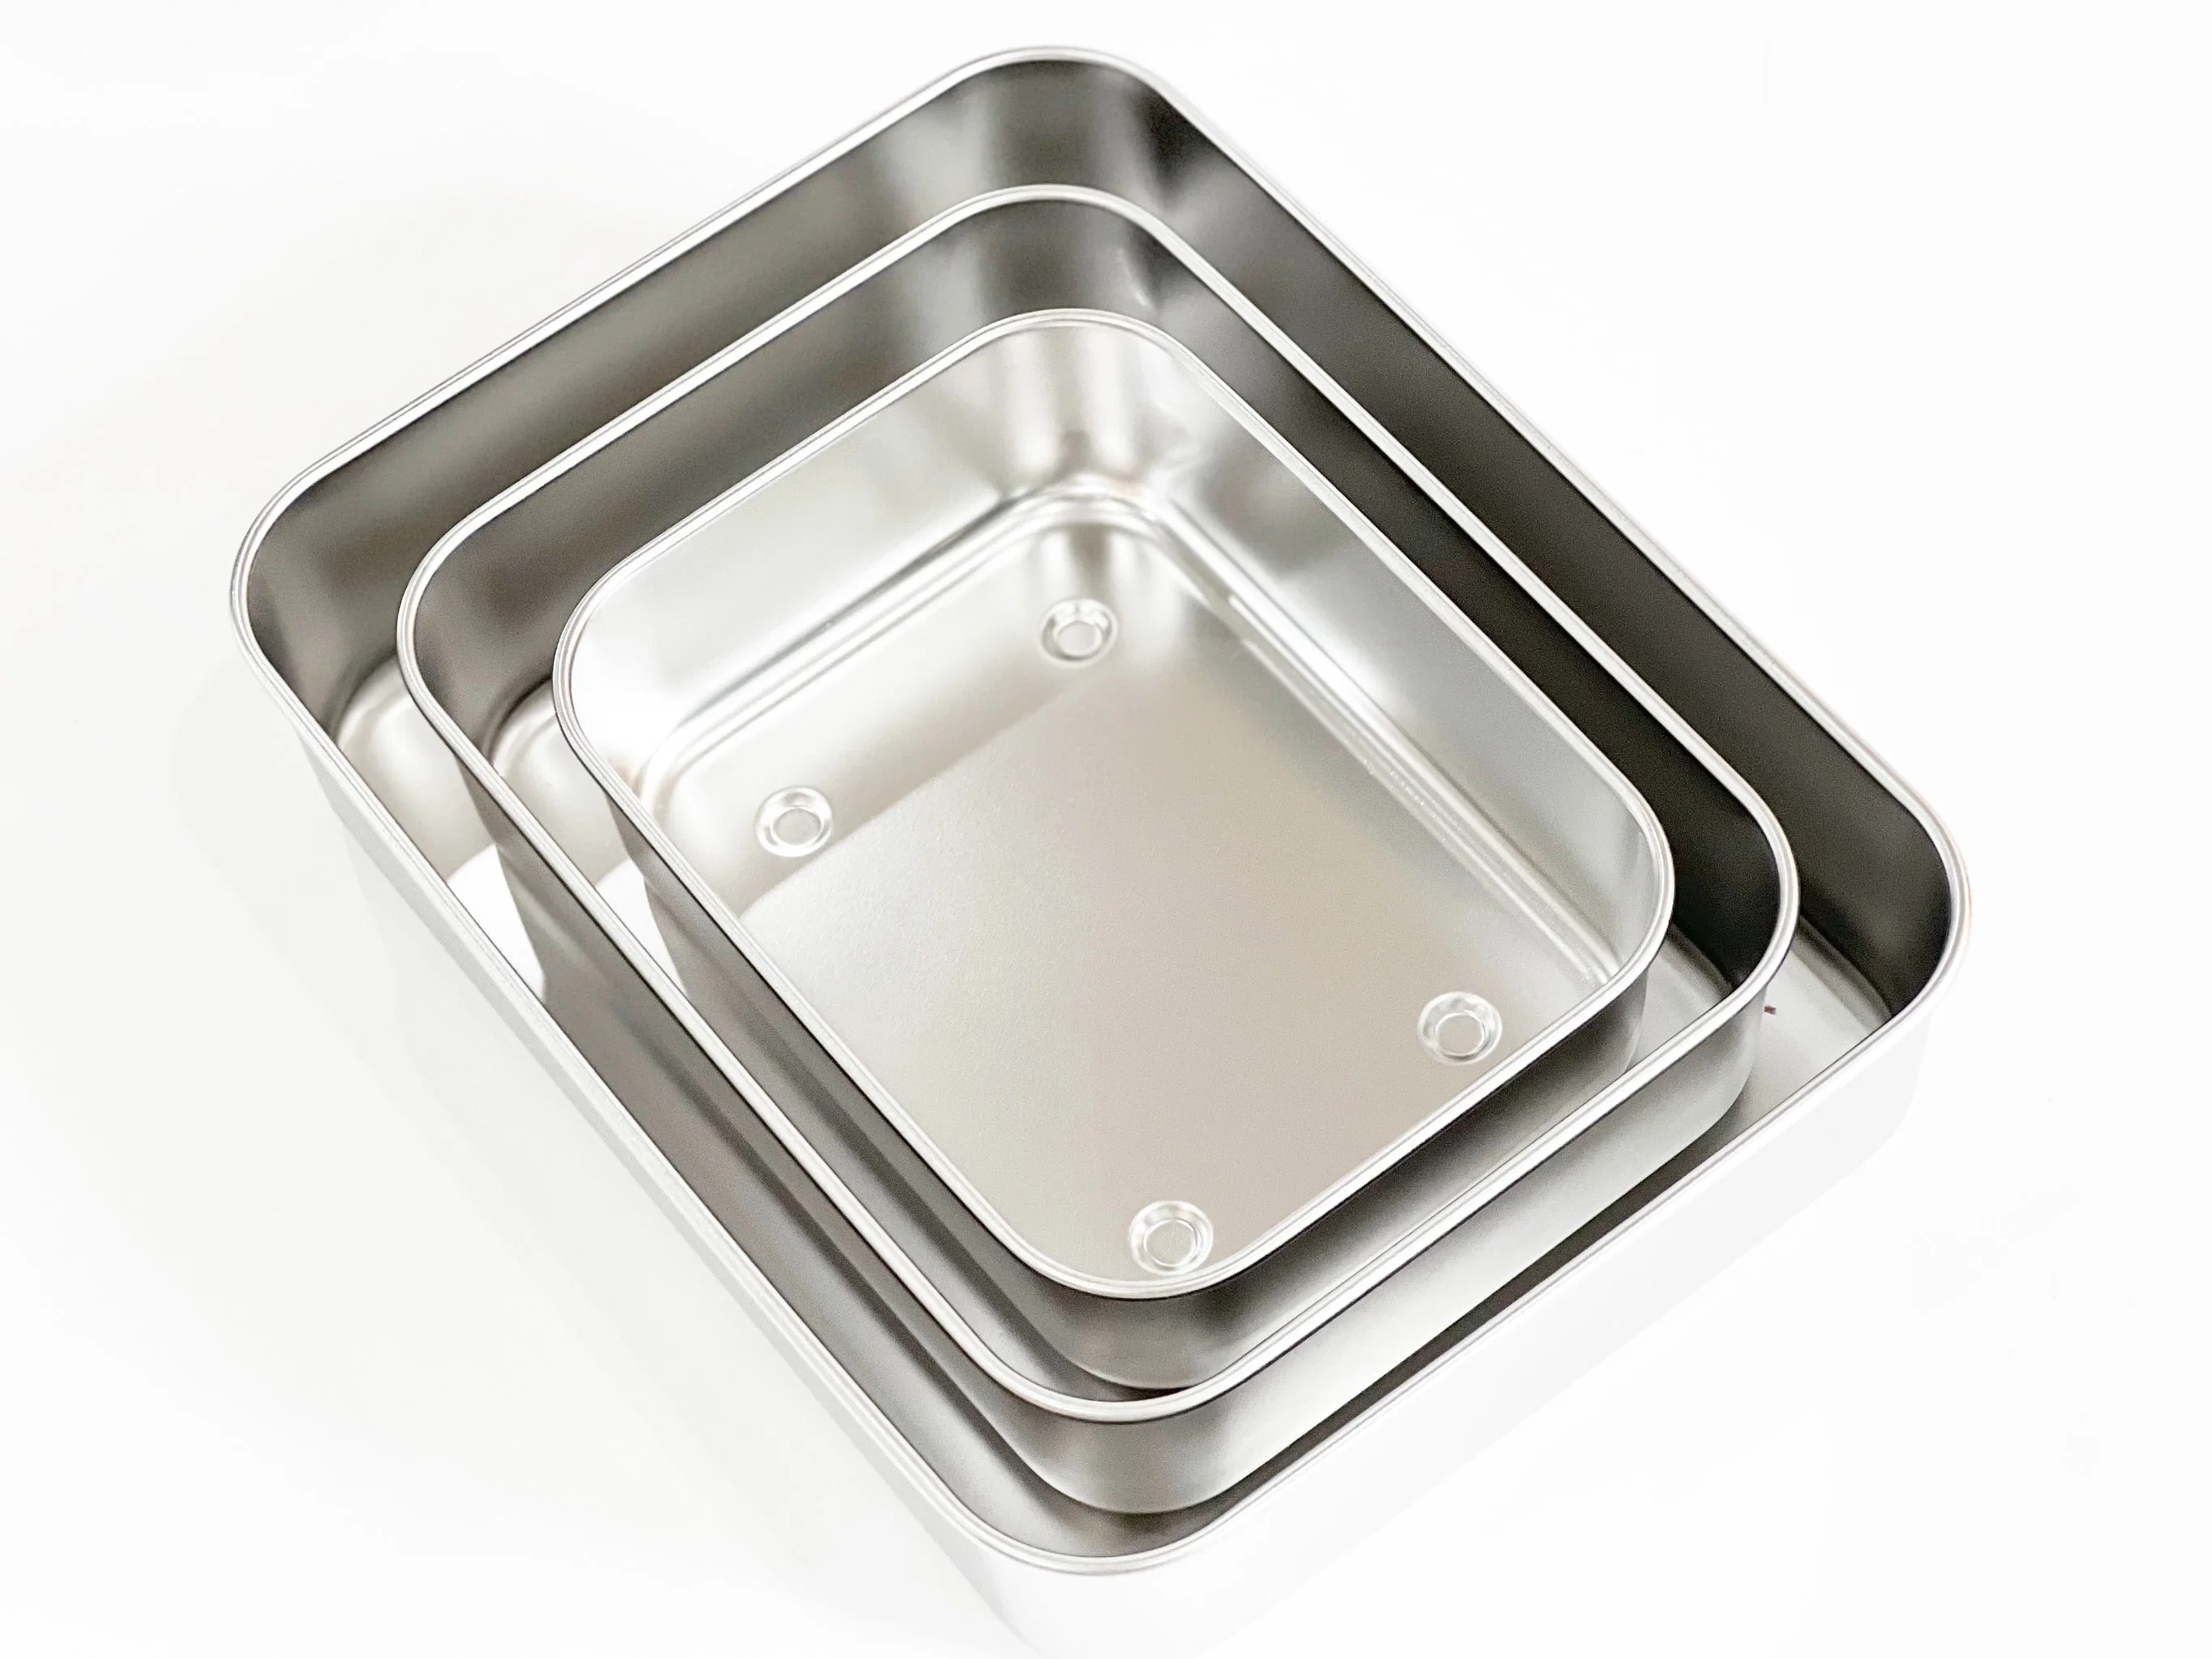 Boîte à lunch en acier inoxydable pour aliments, conteneurs de stockage d'aliments respectueux de l'environnement sans BPA avec couvercle.